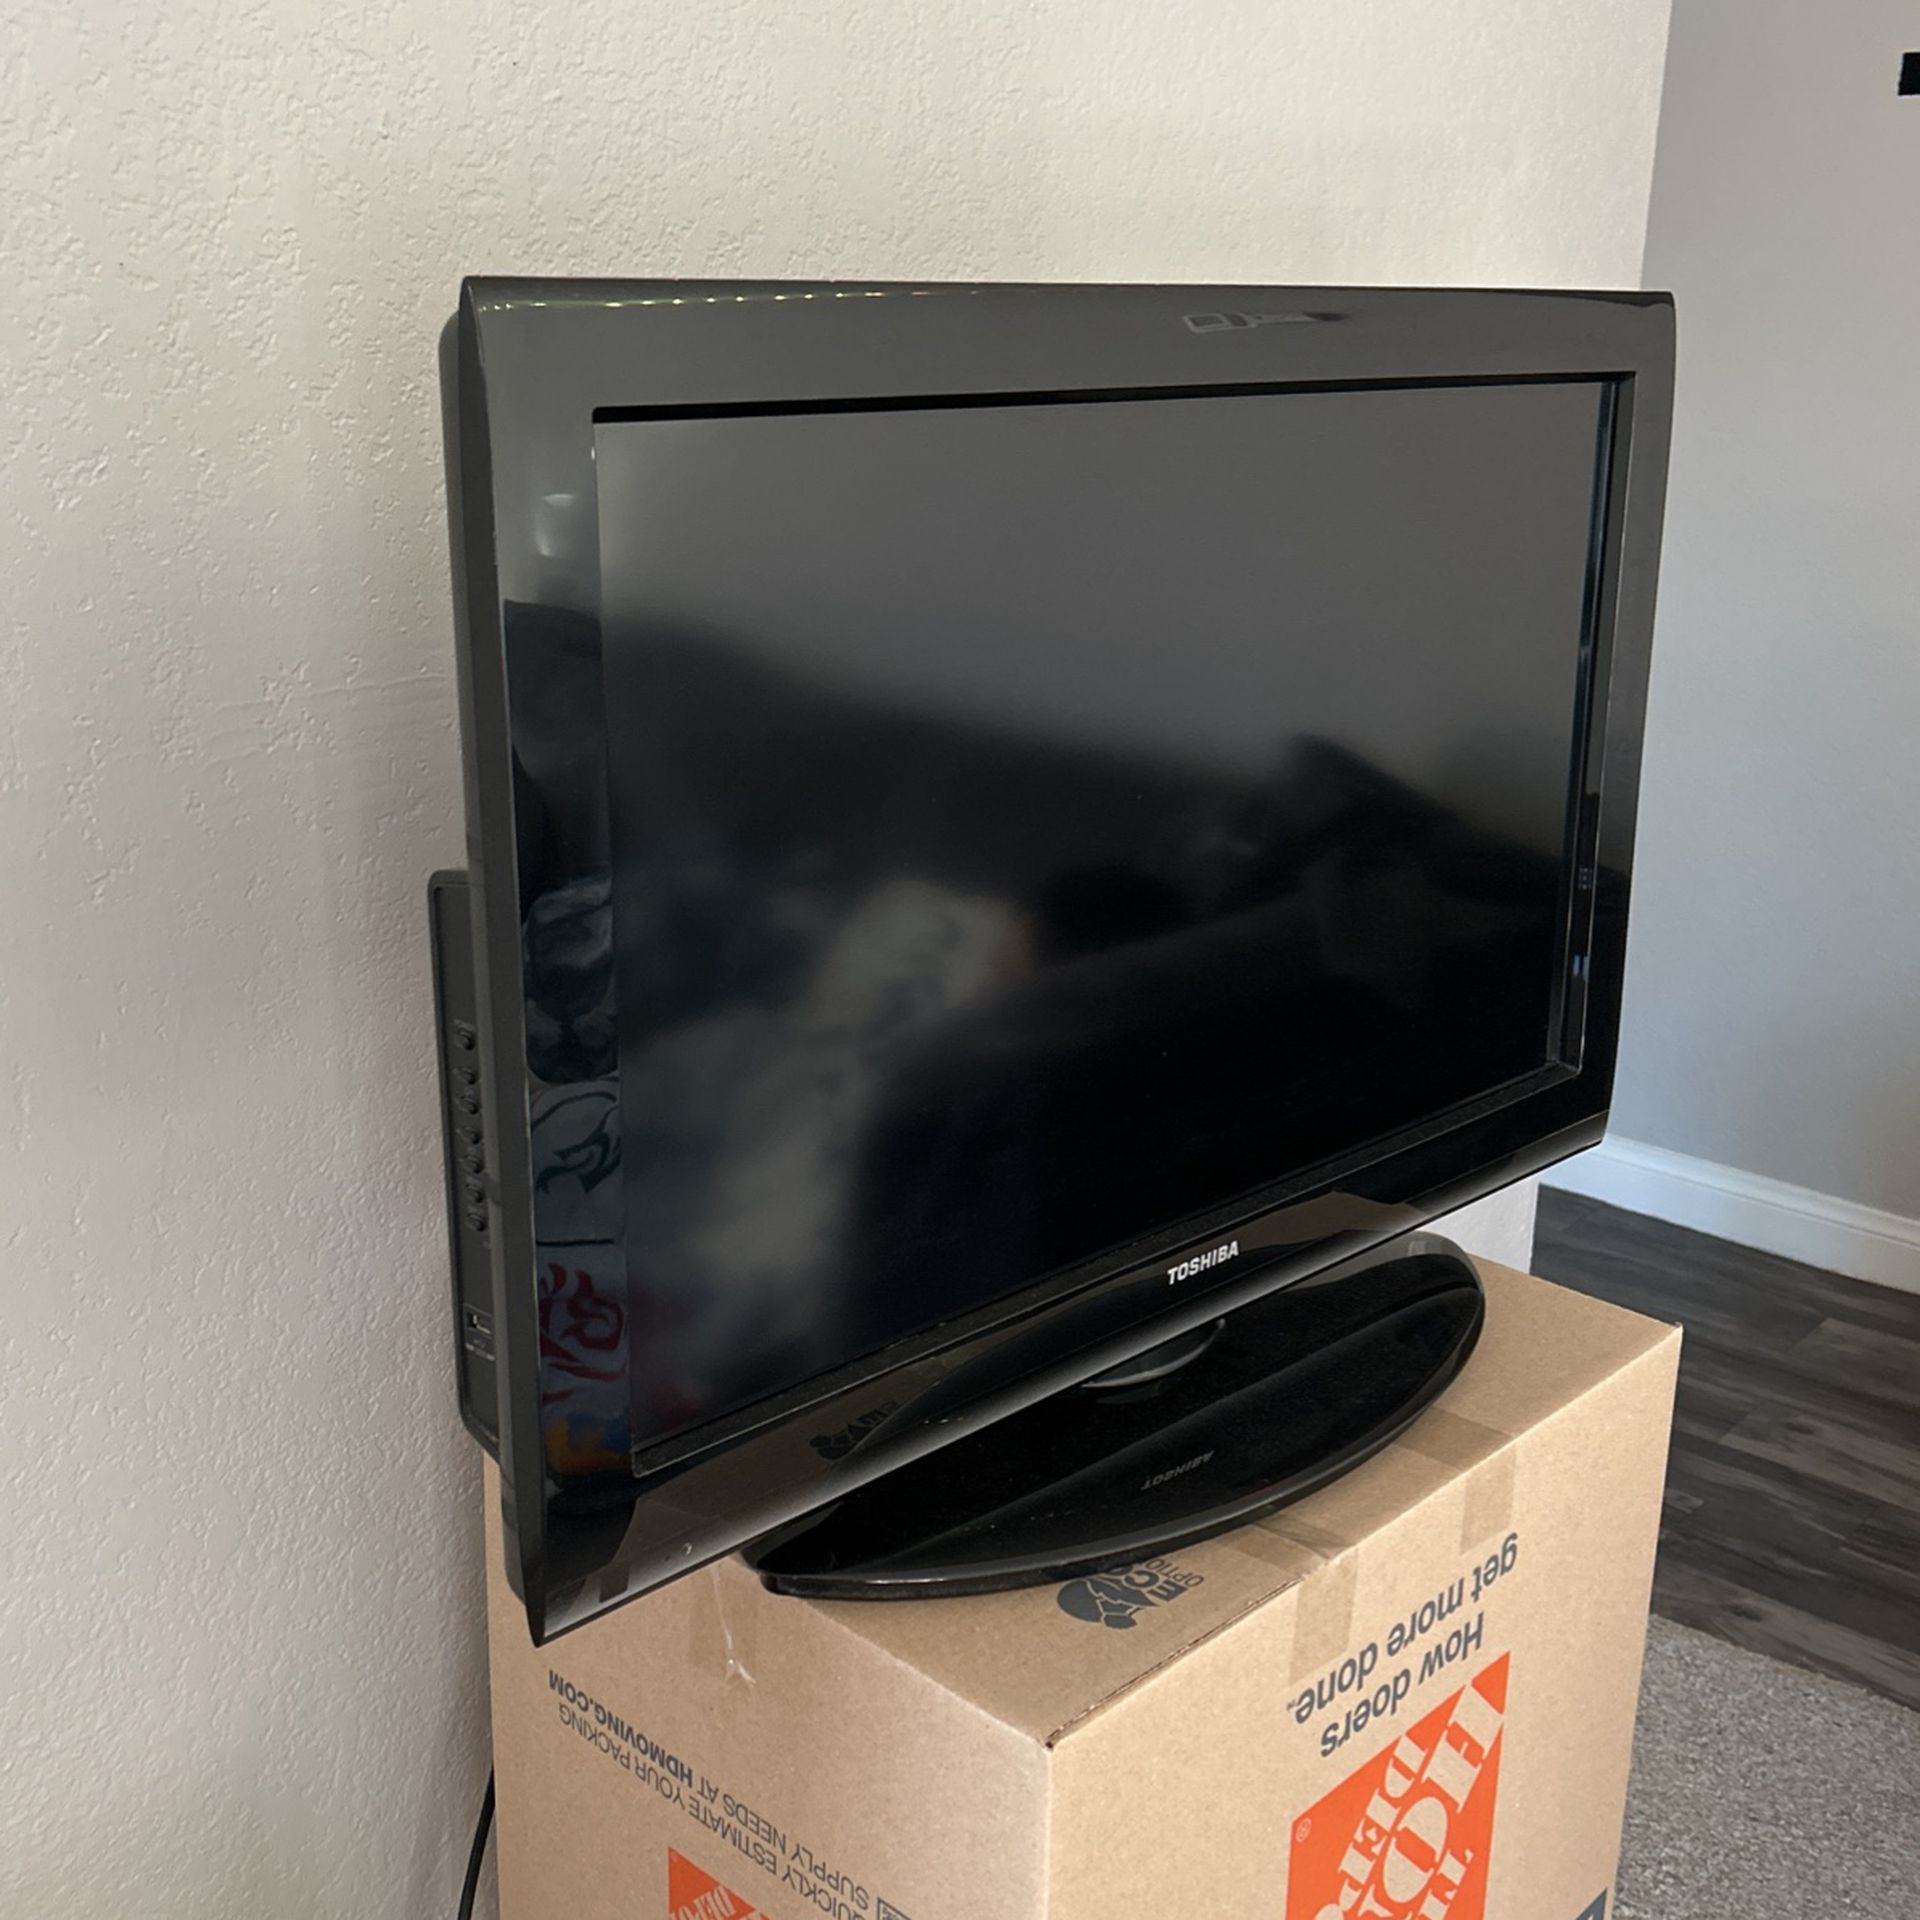 32” TV (not a smart TV)